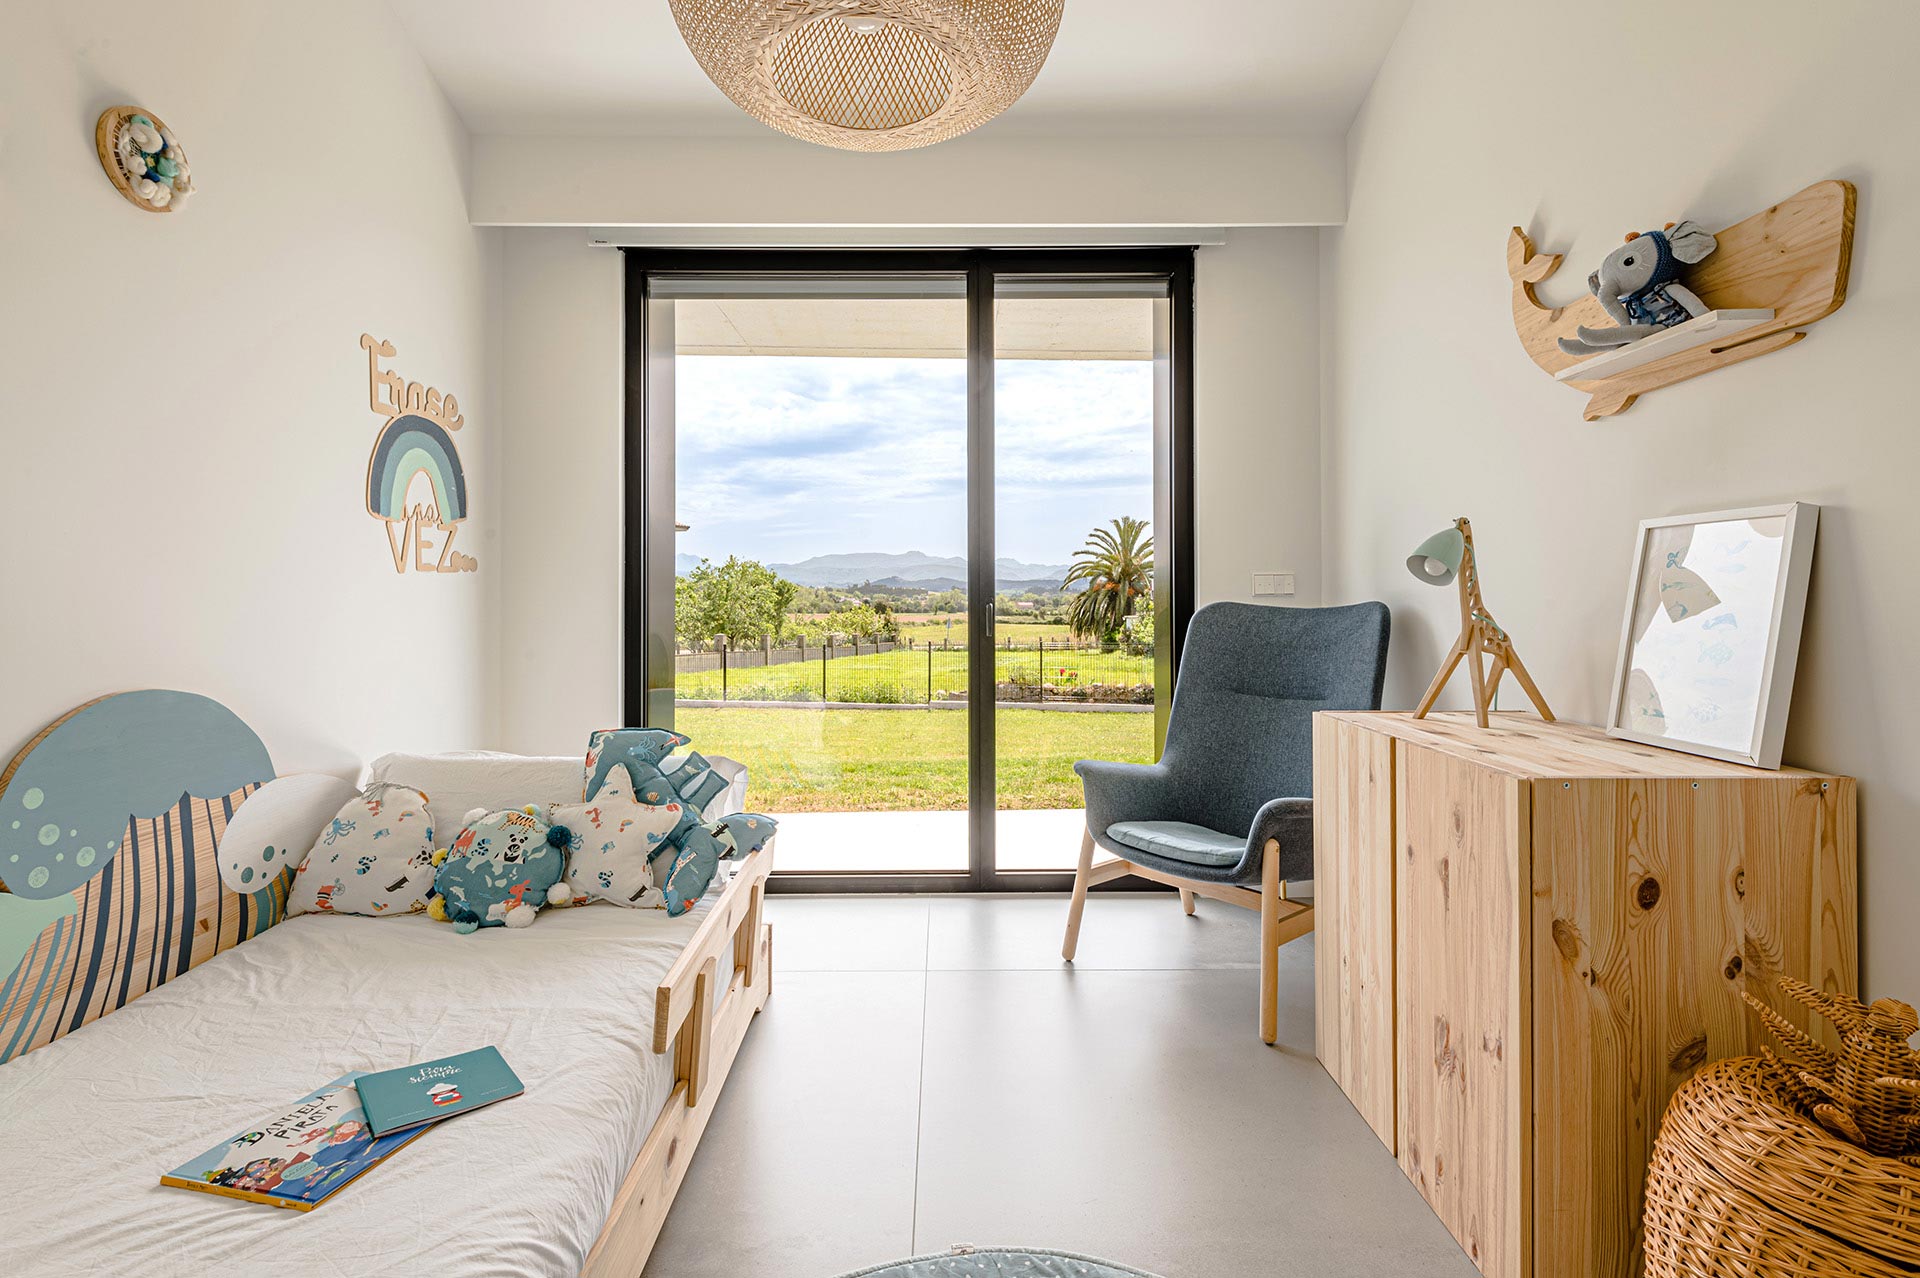 Diseño interior de dormitorio juvenil diseñado por Moah Arquitectos en Suesa. Cantabria.